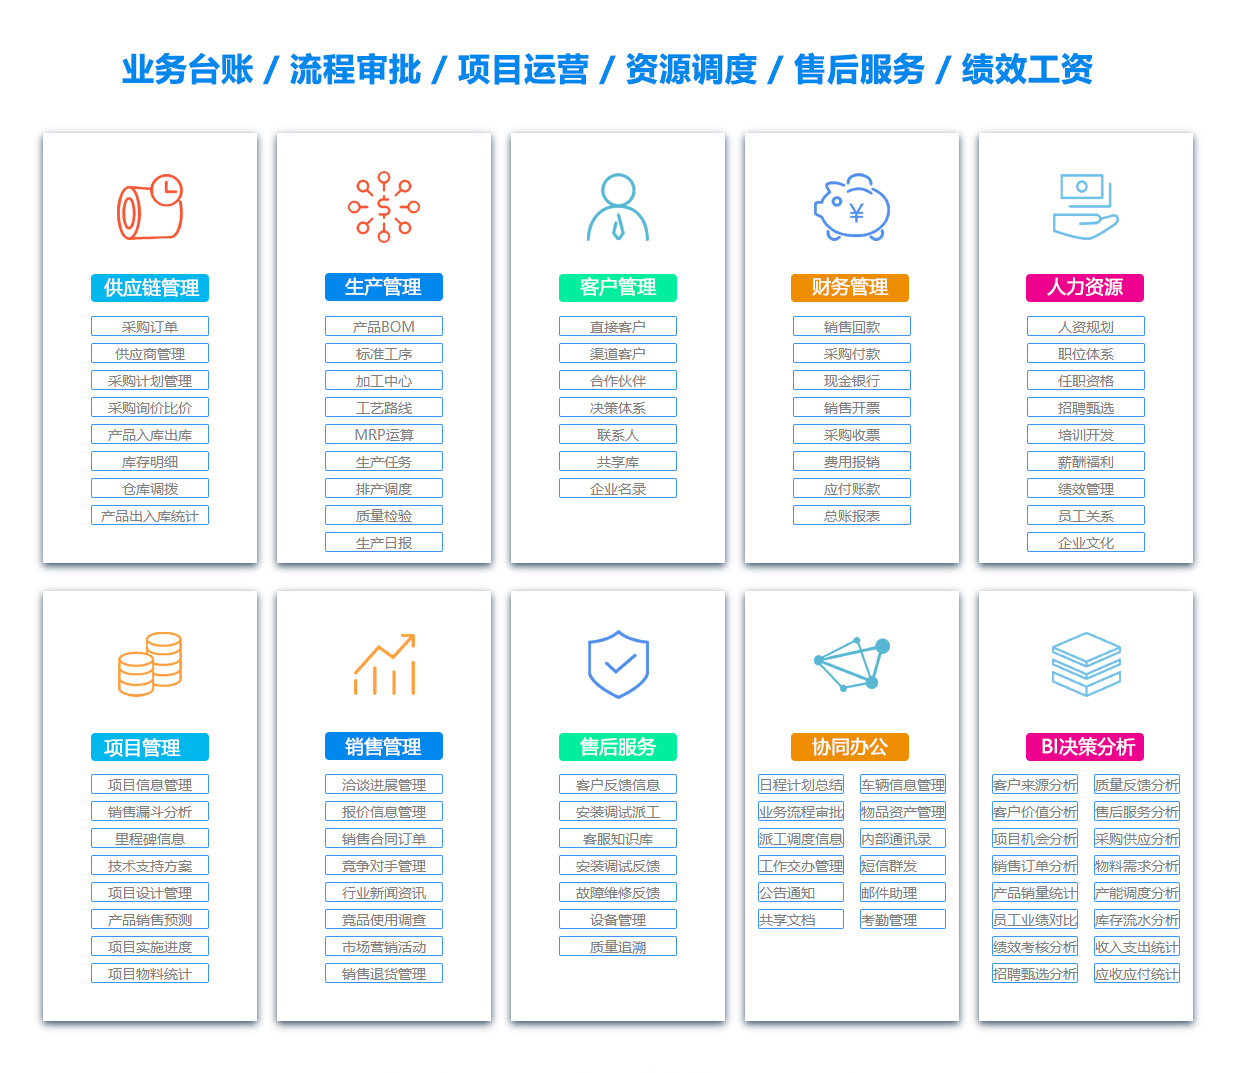 郑州BI:商业智能软件